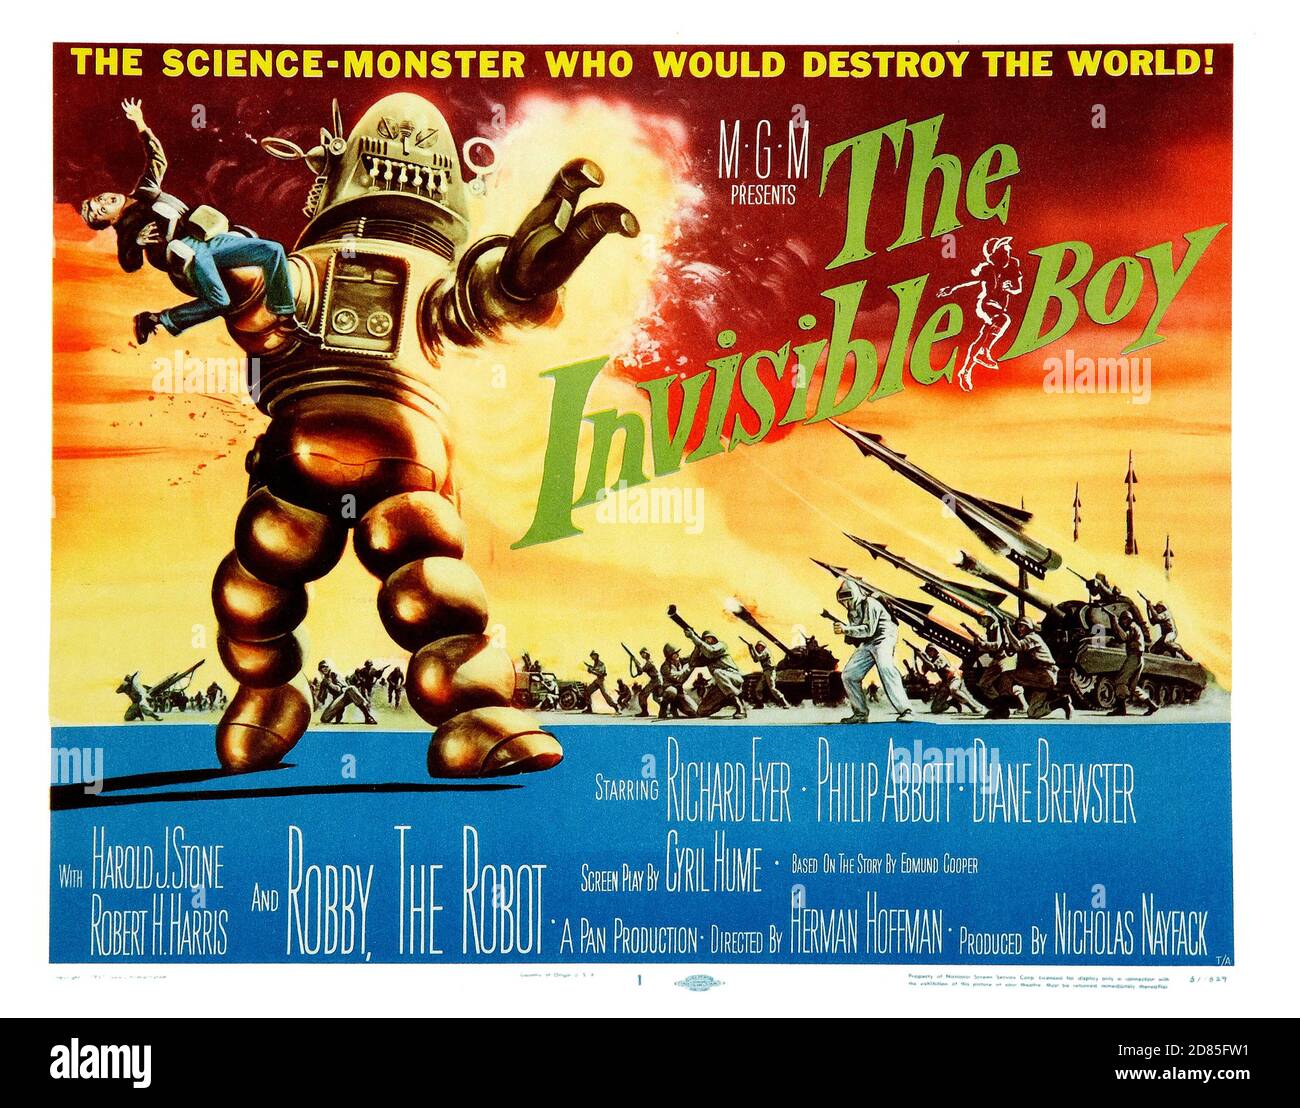 Affiche de film vintage: The invisible Boy (alias S.O.S Spaceship) est un film de science-fiction américain noir et blanc de 1957. Poster classique du film 1950s. Banque D'Images